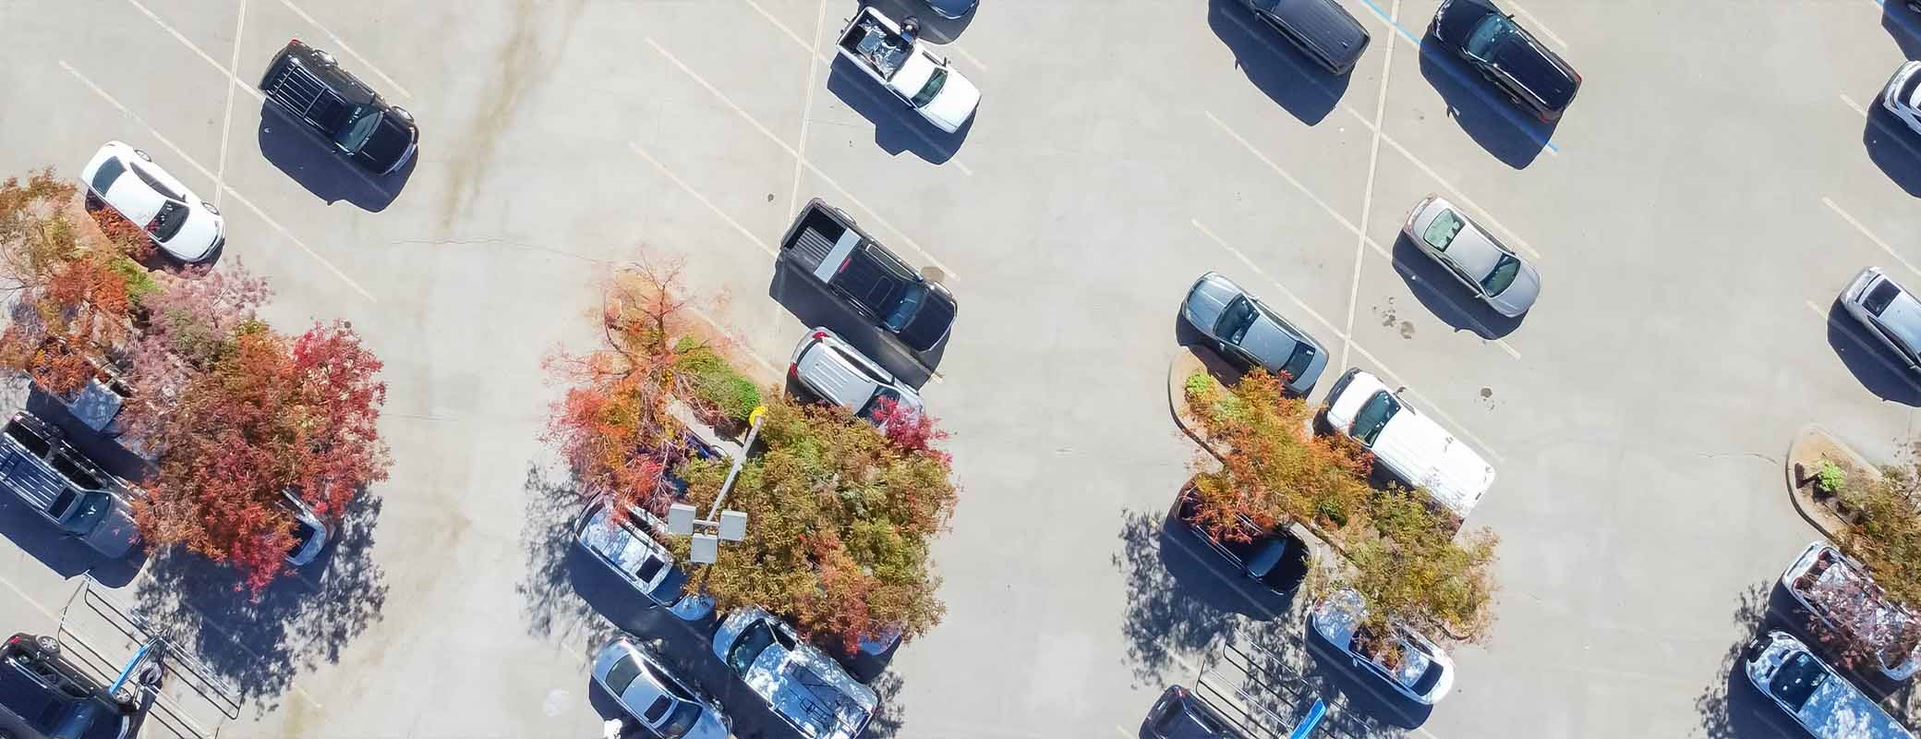 Rechts vor links auf Parkplätzen?